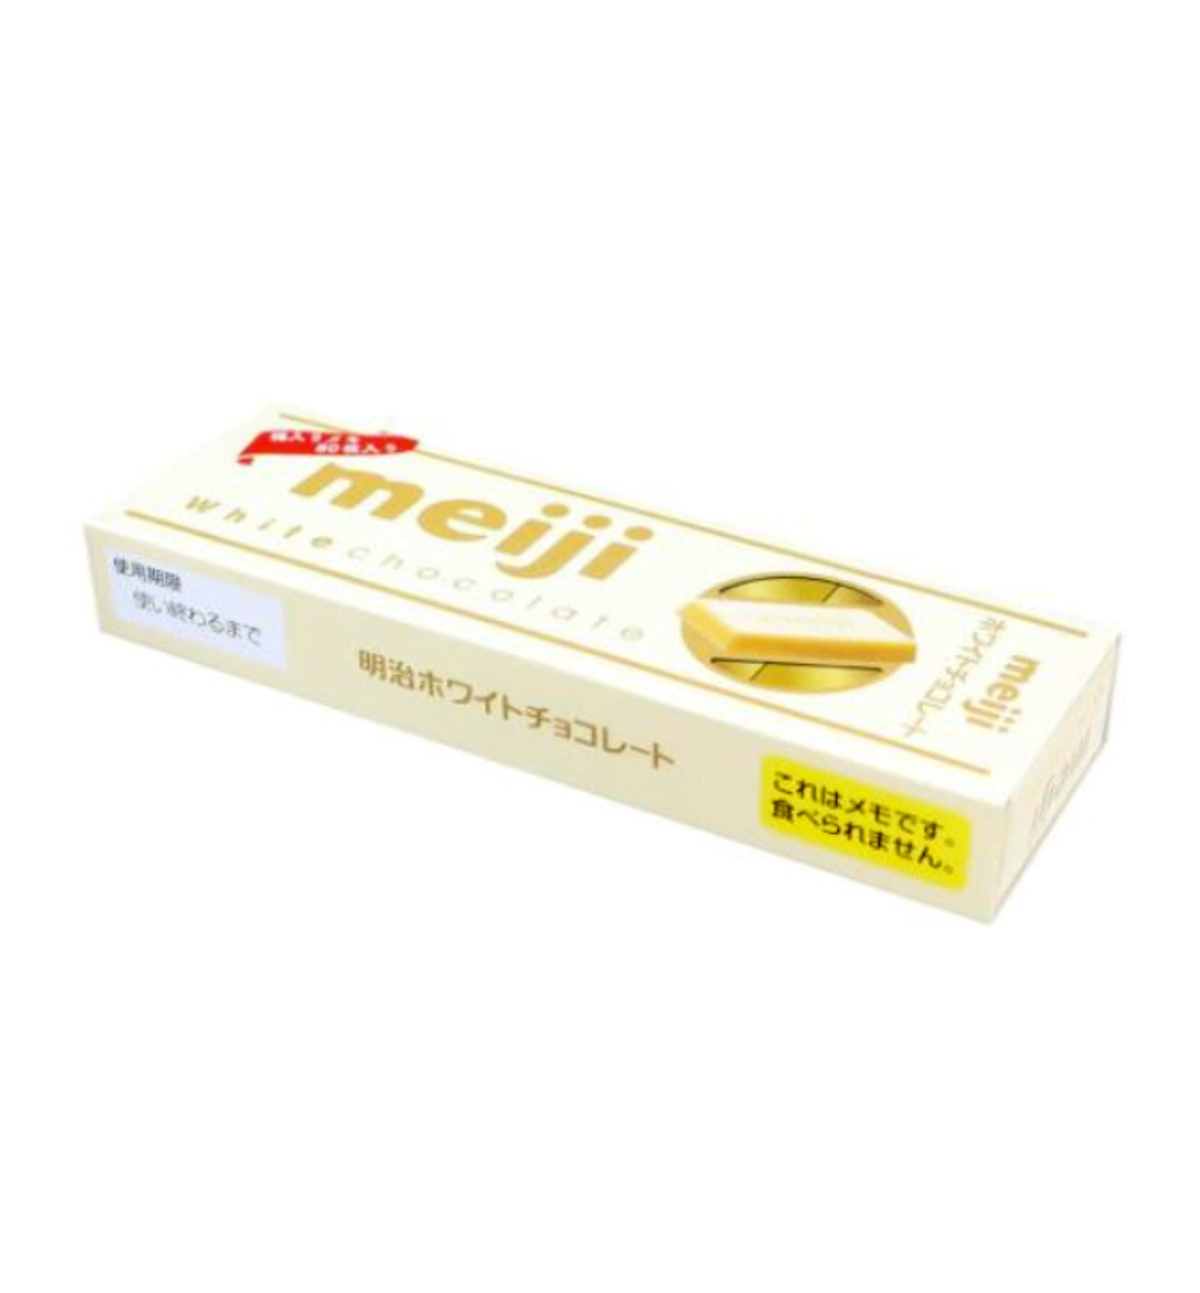 Sweets Series Box Memopad: White Chocolate